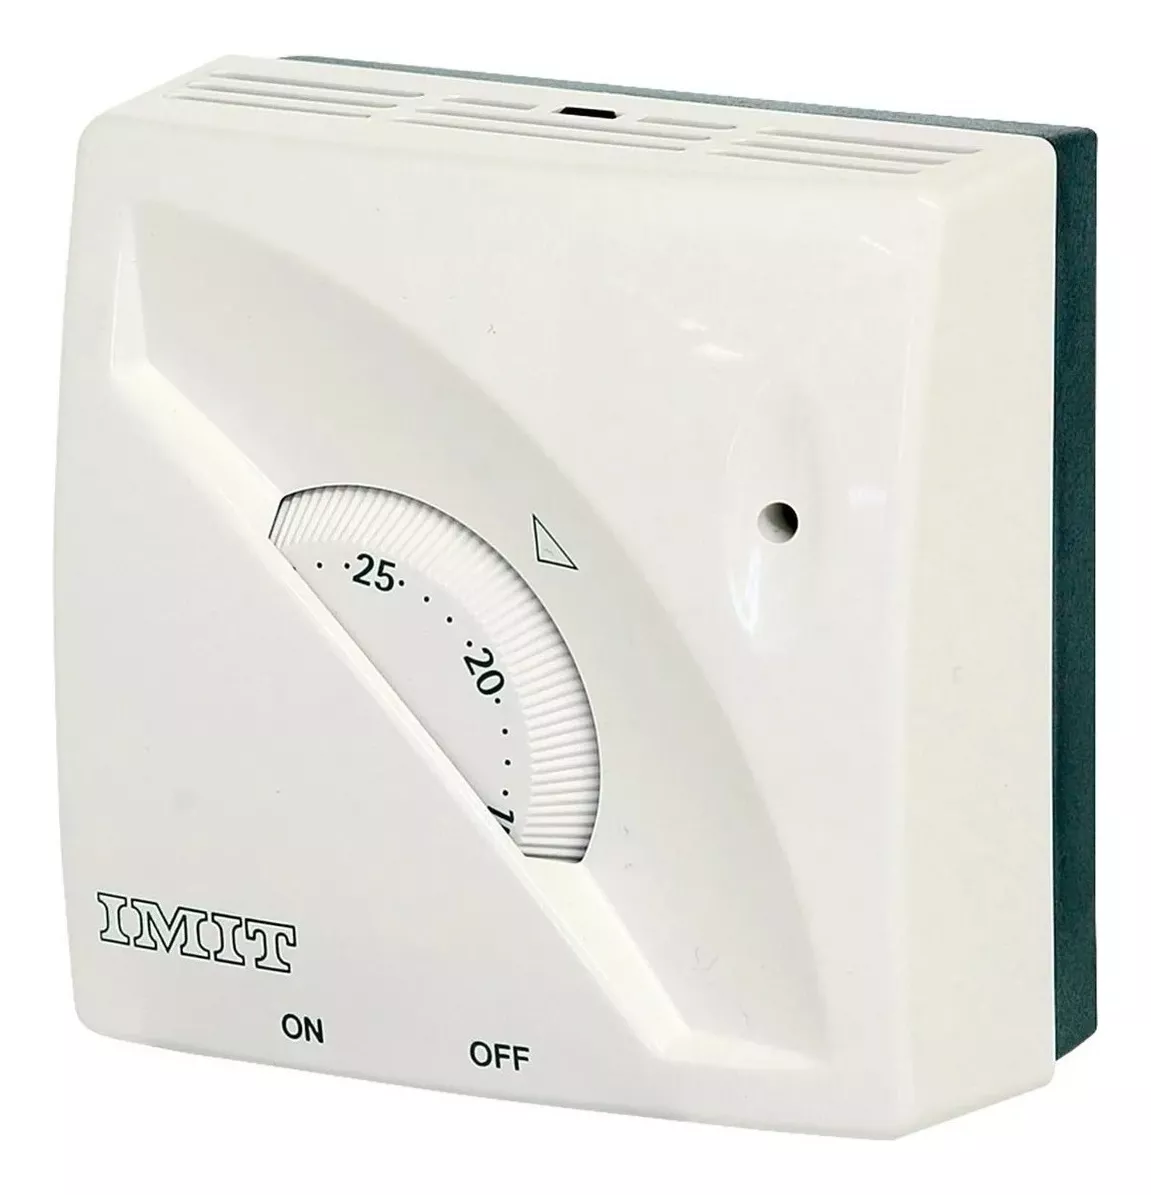 Tercera imagen para búsqueda de termostato caldera